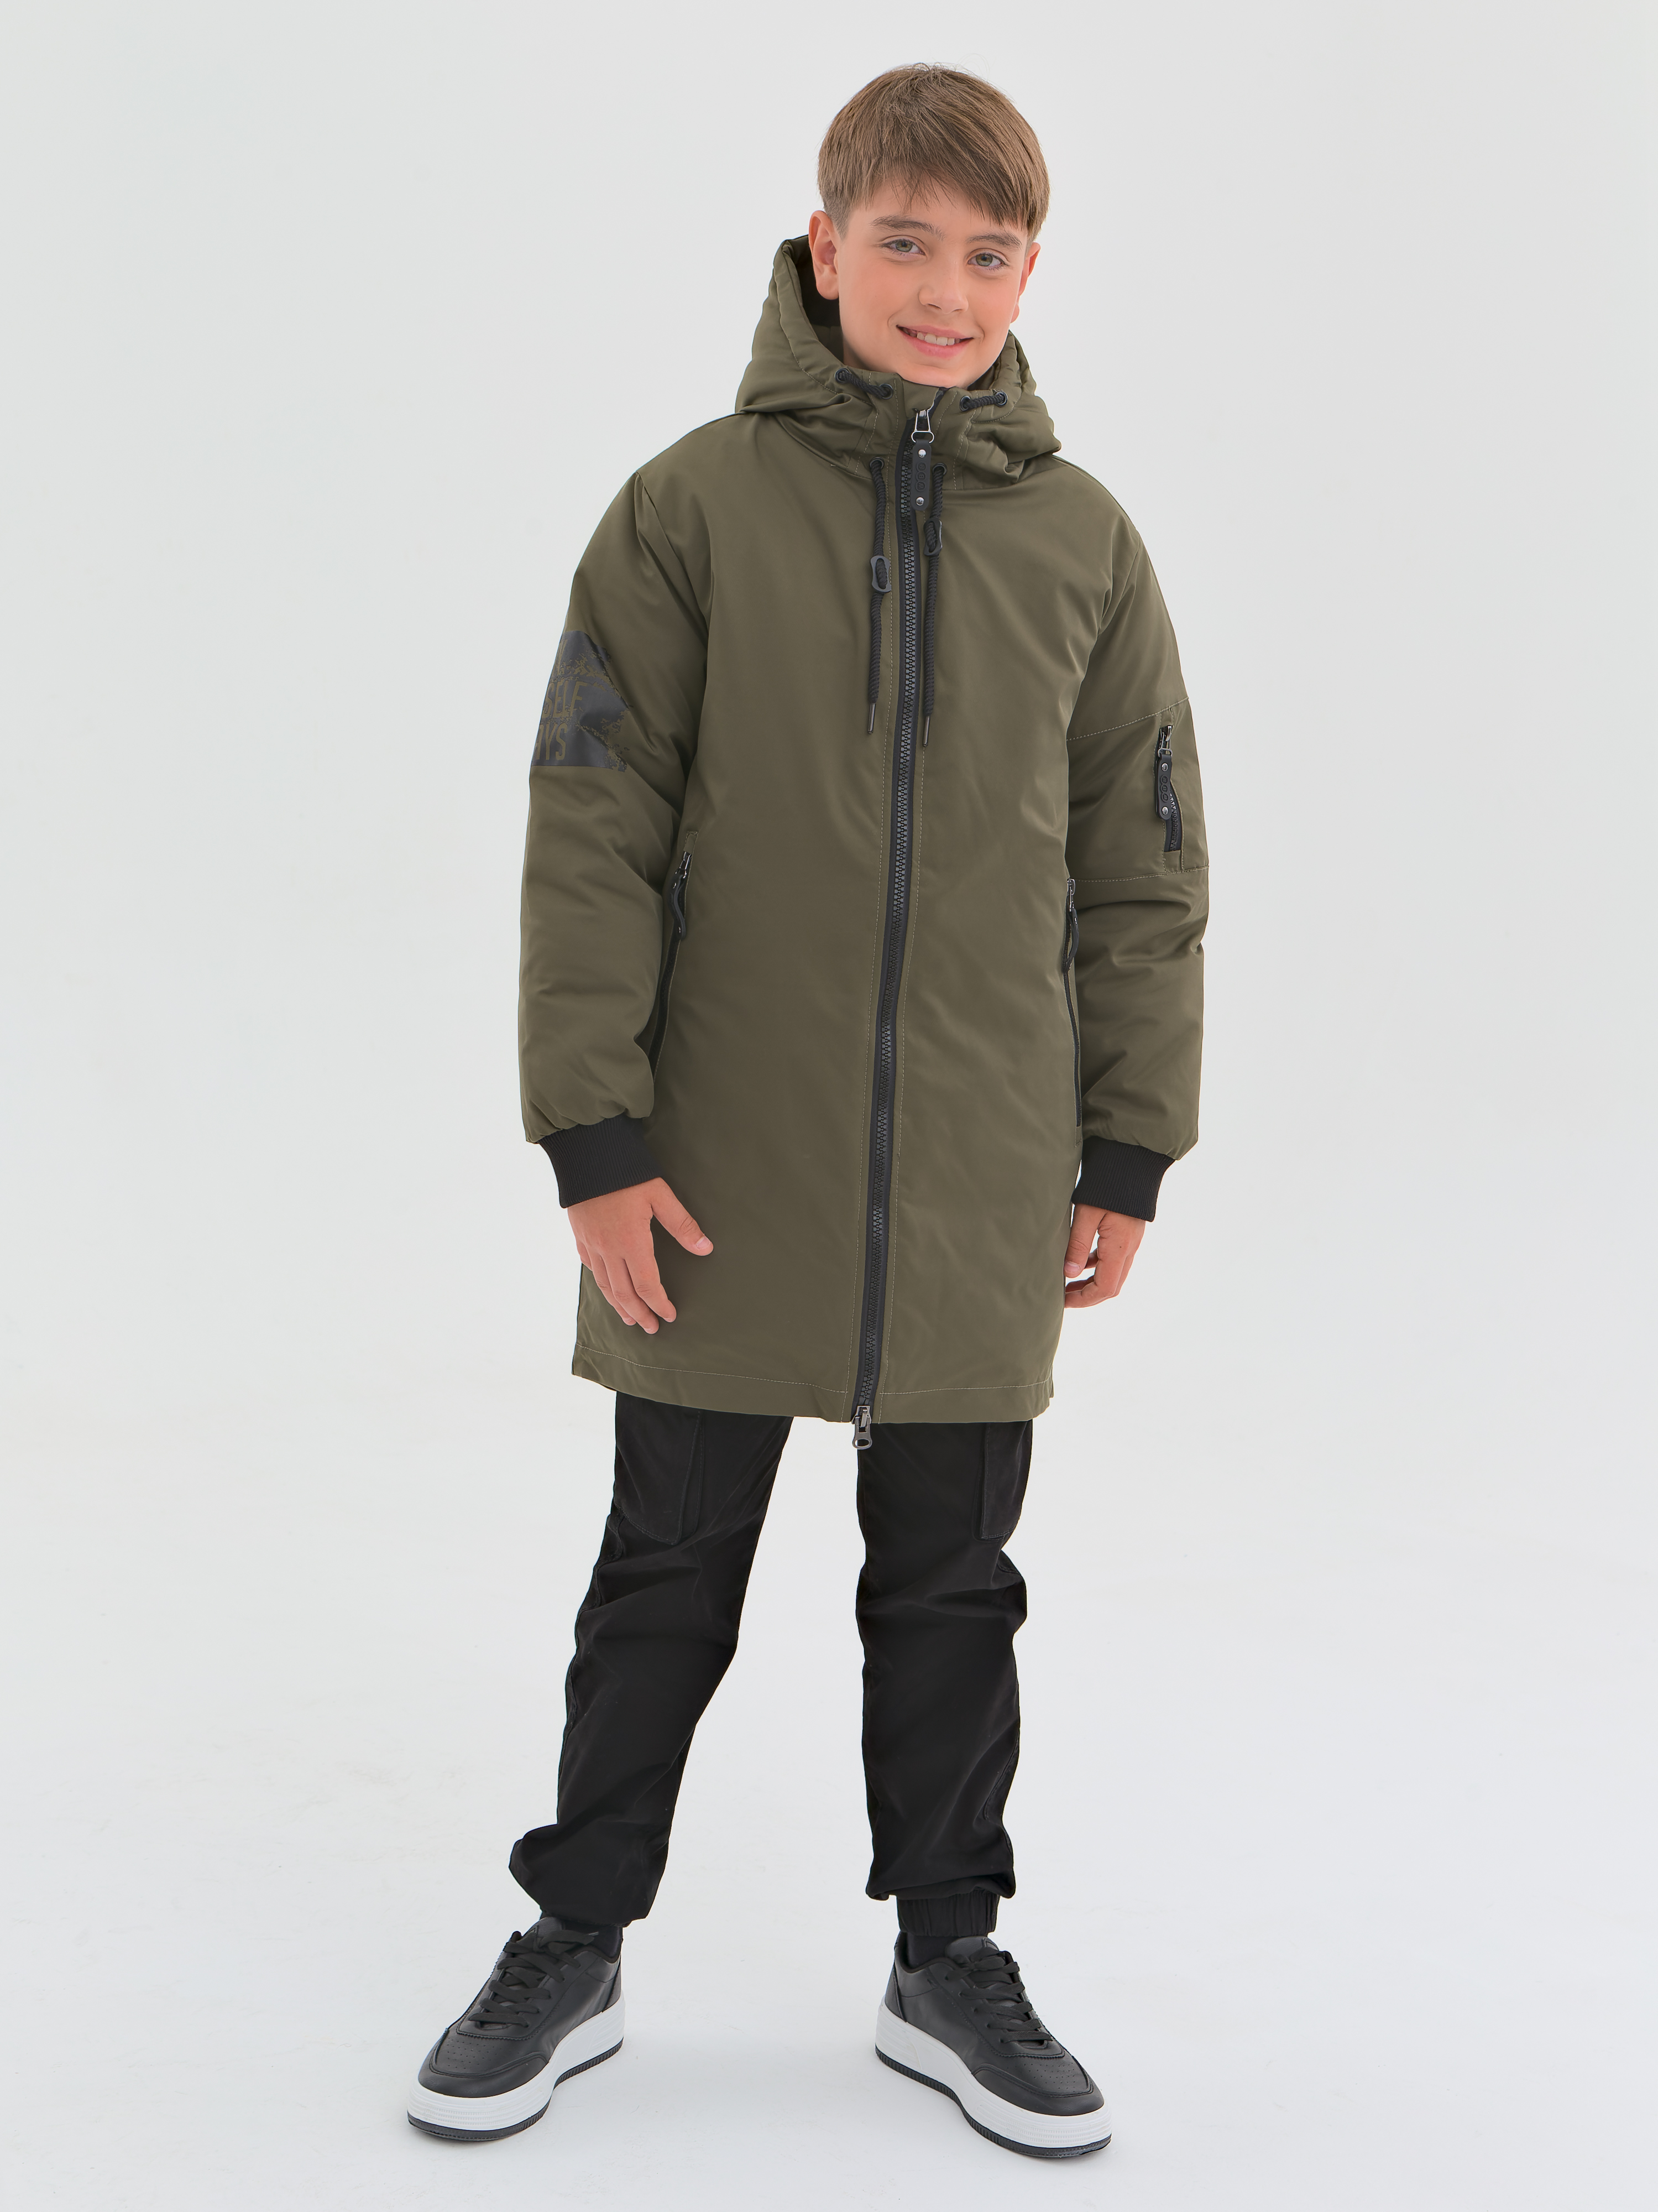 Куртка детская WBR 68-001, хаки, 152 куртка пуховик а хаки diesel детская